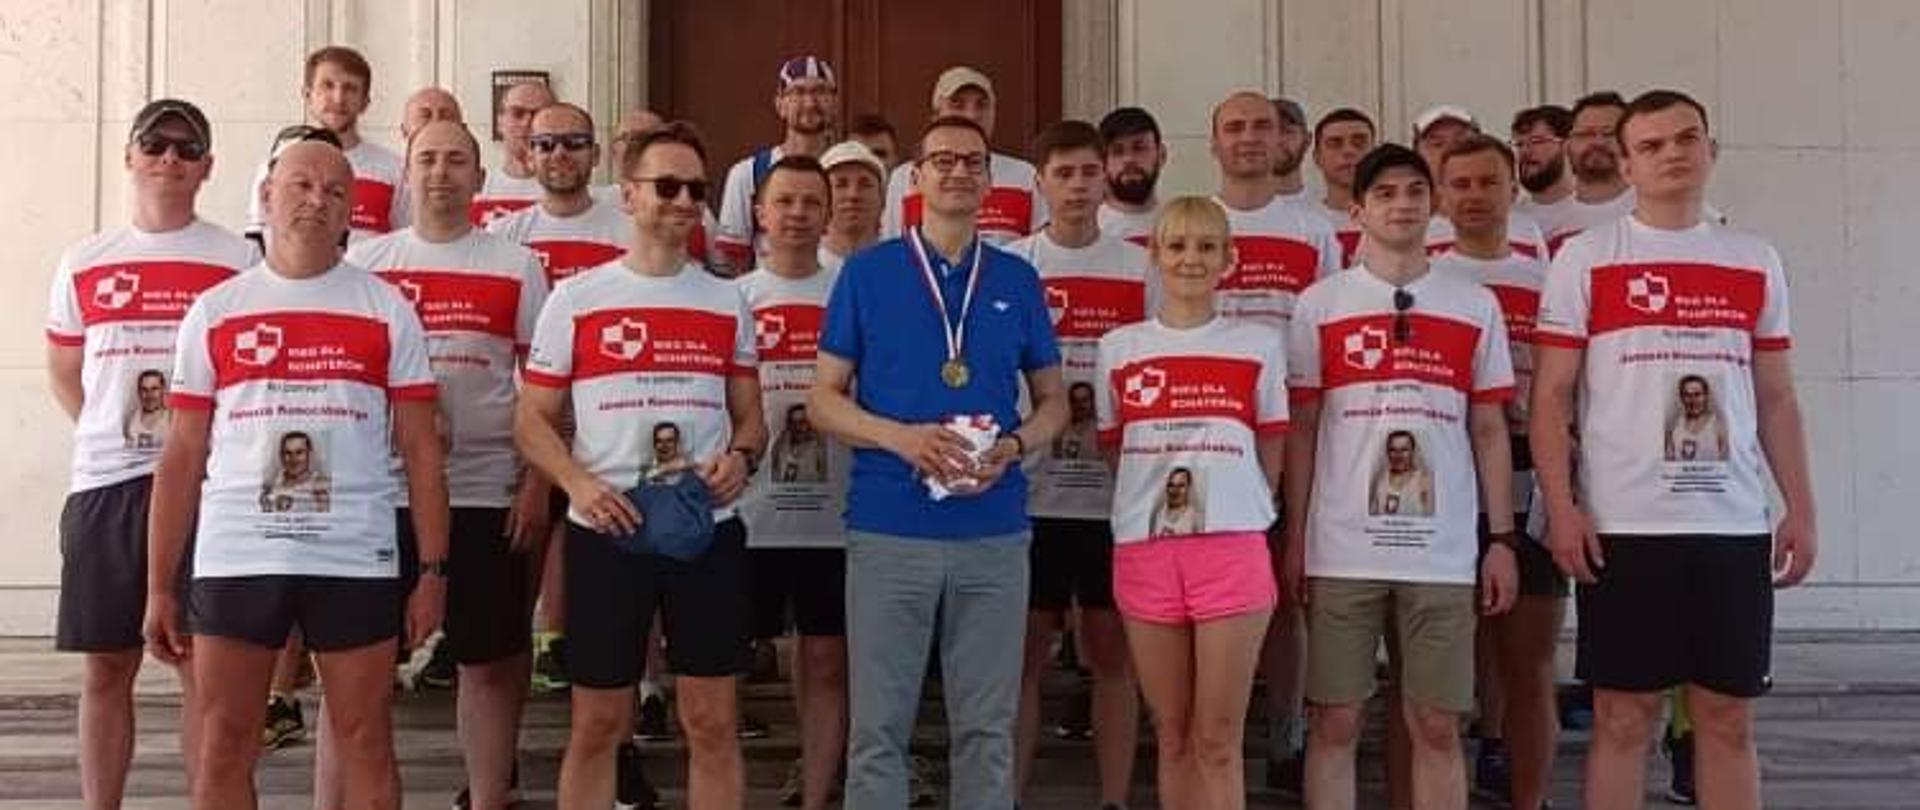 Grupa biegaczy wśród nich minister Buda i premier Morawiecki